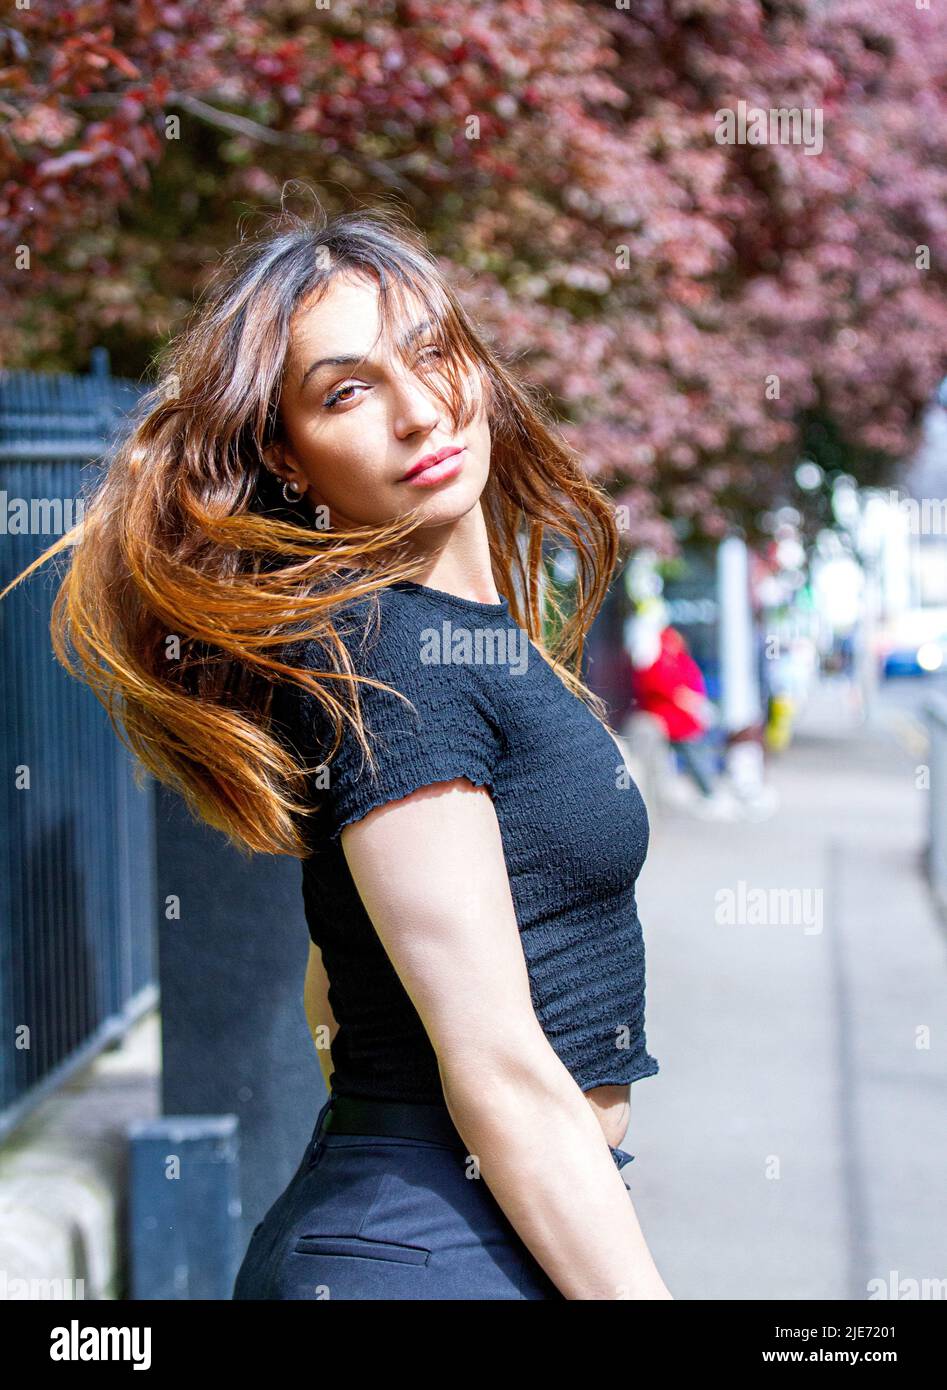 Au cours d'un photoshoot dans le centre-ville de Dundee, une femme européenne de 38 ans pose incroyablement glamour pour l'appareil photo, Ecosse, Royaume-Uni Banque D'Images